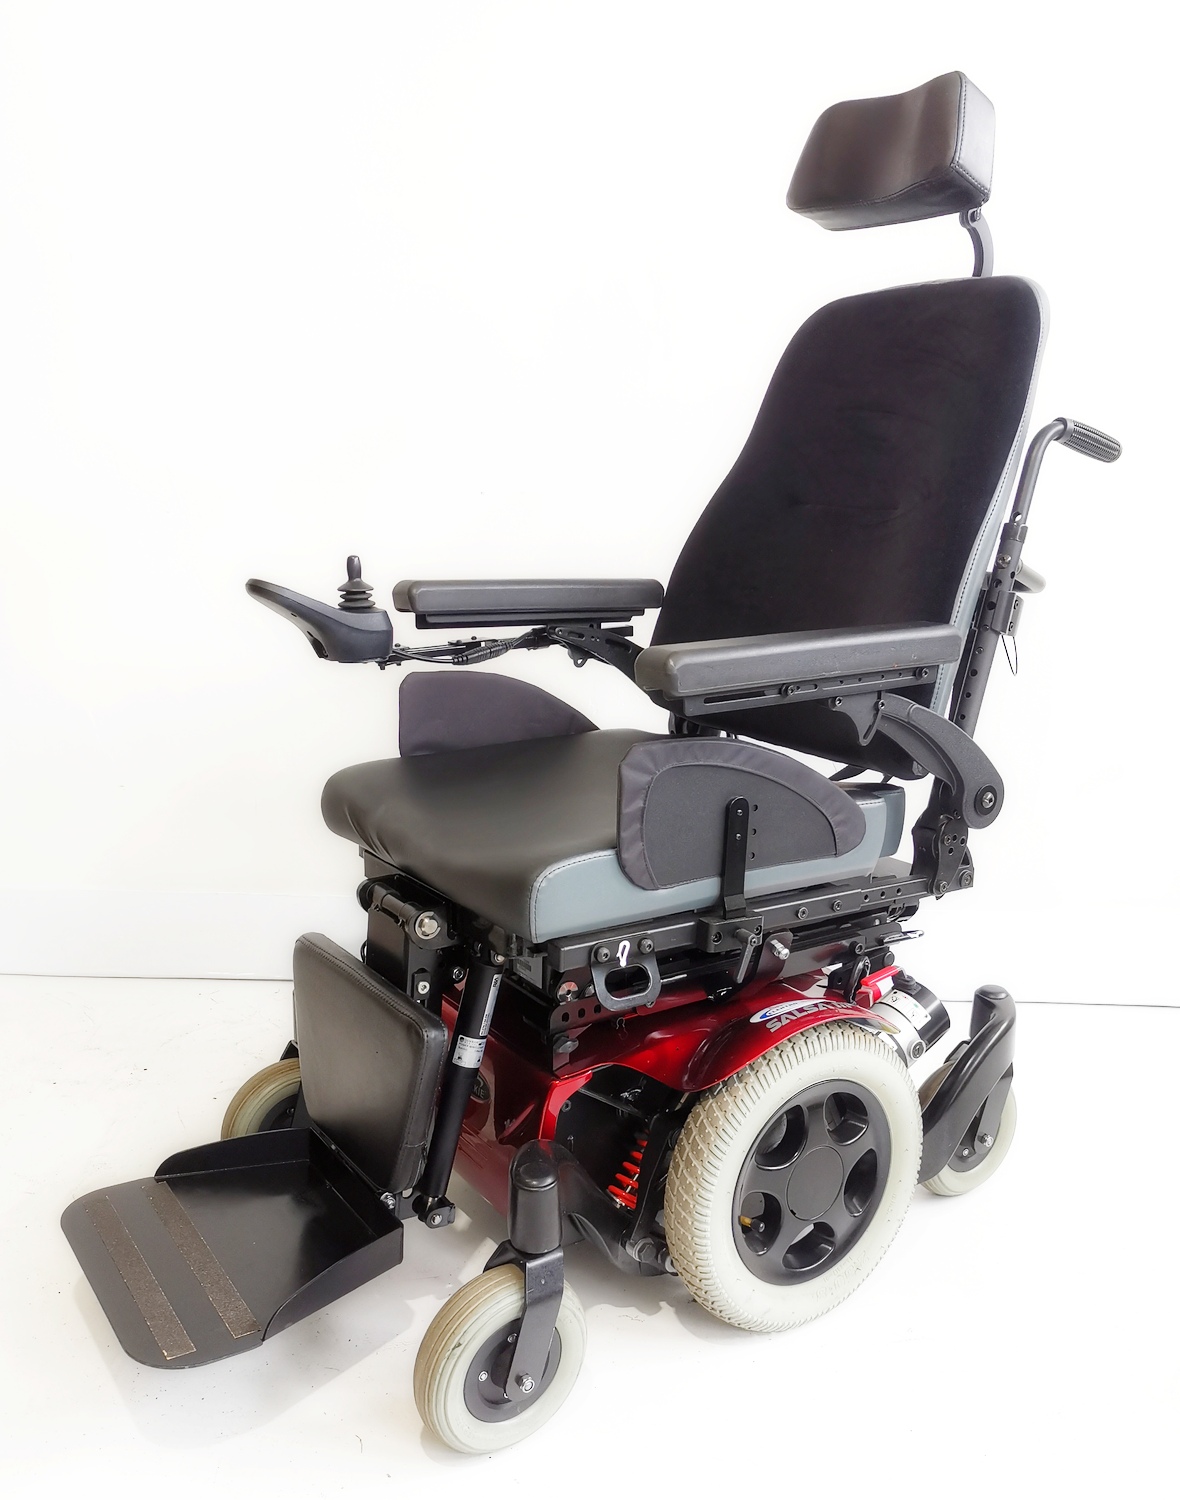 wózek inwalidzki elektryczny quickie samba m